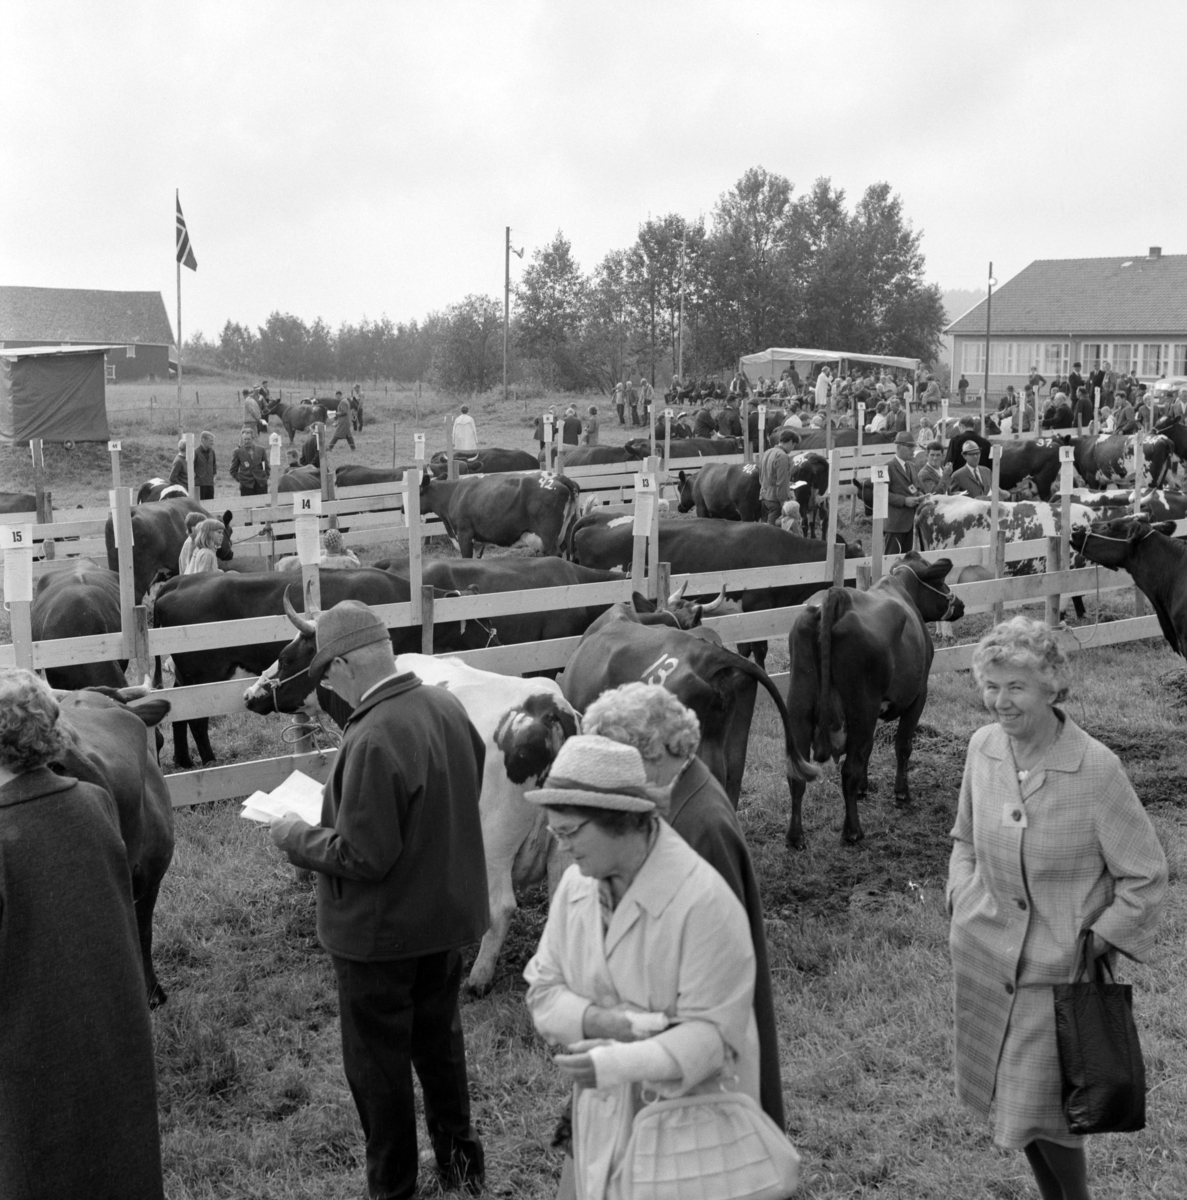 Fra bygdeutstillingen i 1970 på Ask i Gjerdrum. Fesjå , kyr og publikum.